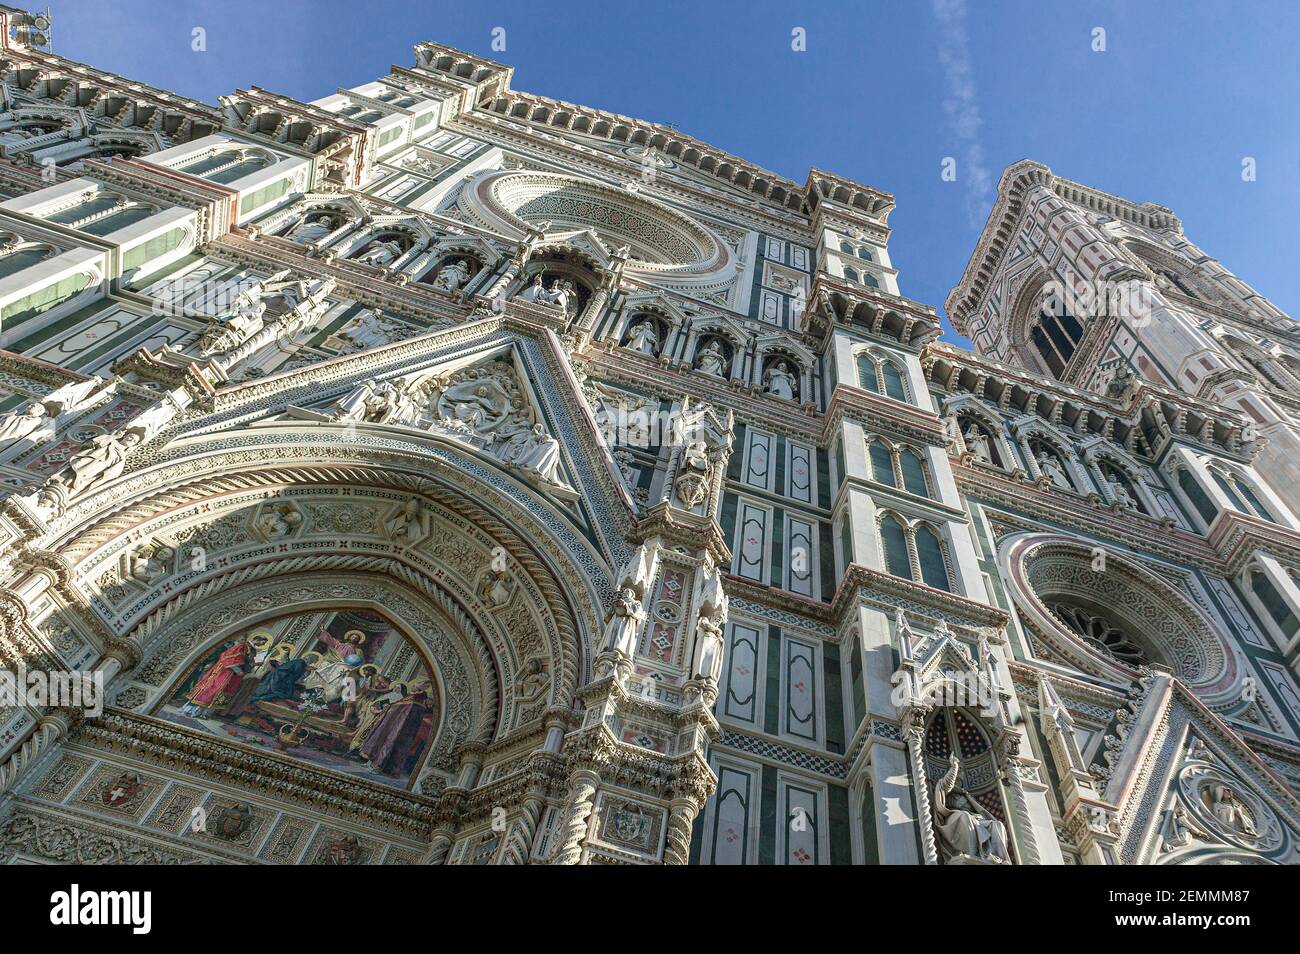 Ansicht der Fassade der Kathedrale Santa Maria in Fiore in Florenz. Florenz, Toskana, Italien, Europa Stockfoto